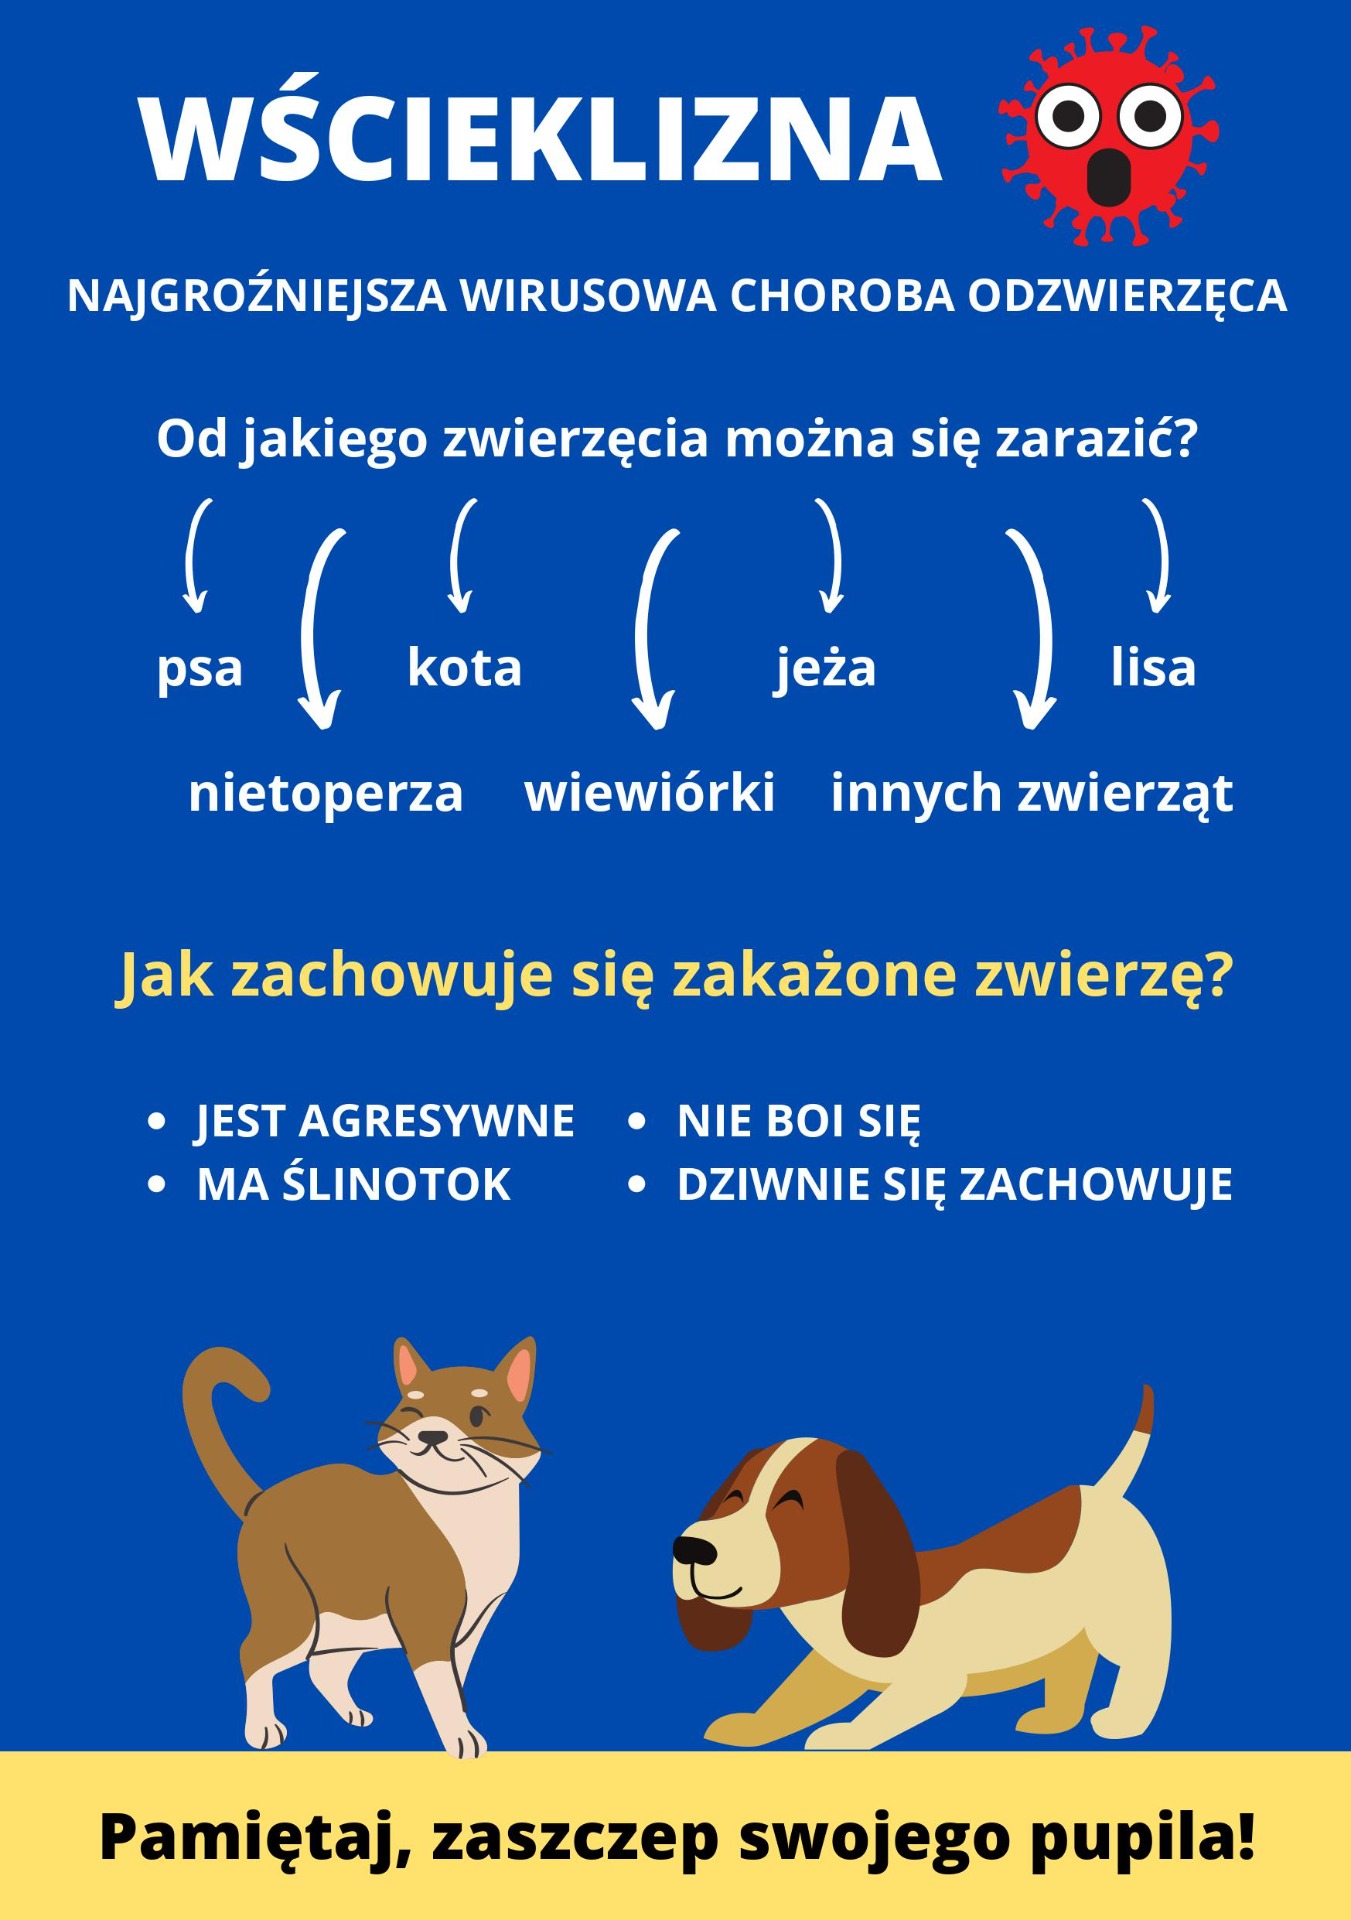 Wścieklizna wśród zwierząt w województwie mazowieckim 2021 - Obrazek 1